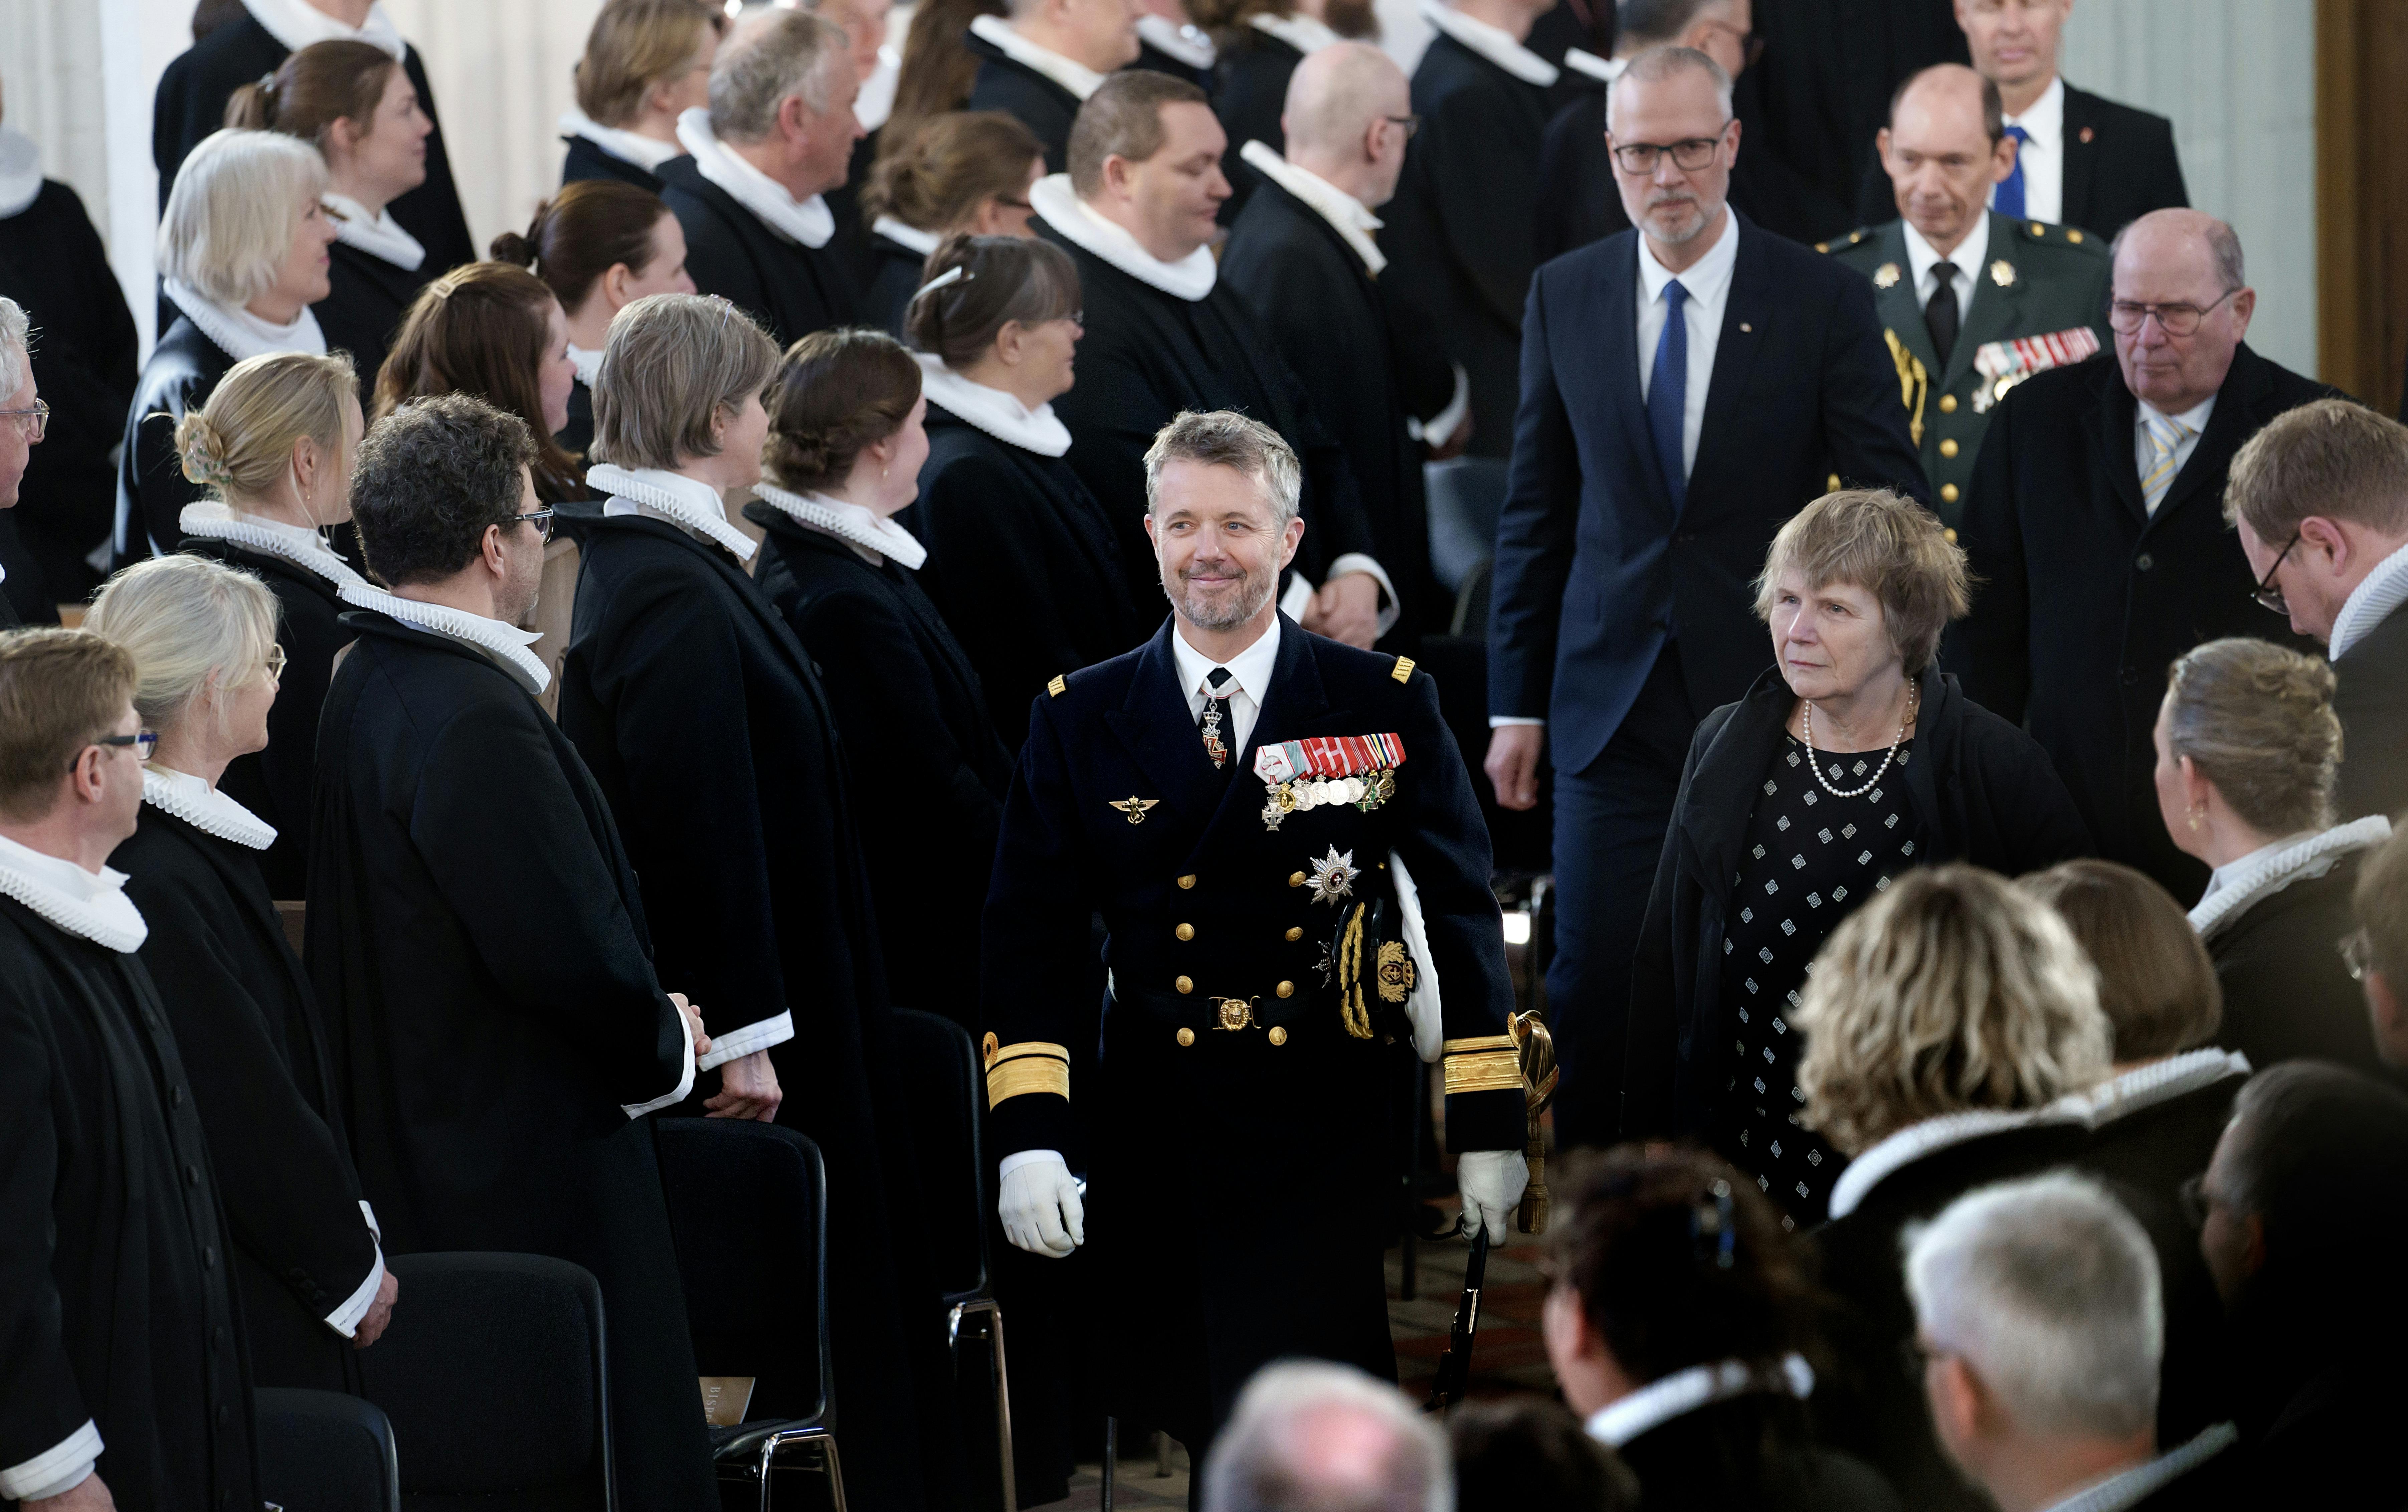 Kronprins Frederik deltog søndag ved indsættelsen af Mads Davidsen som ny biskop for Fyens Stift.&nbsp;
